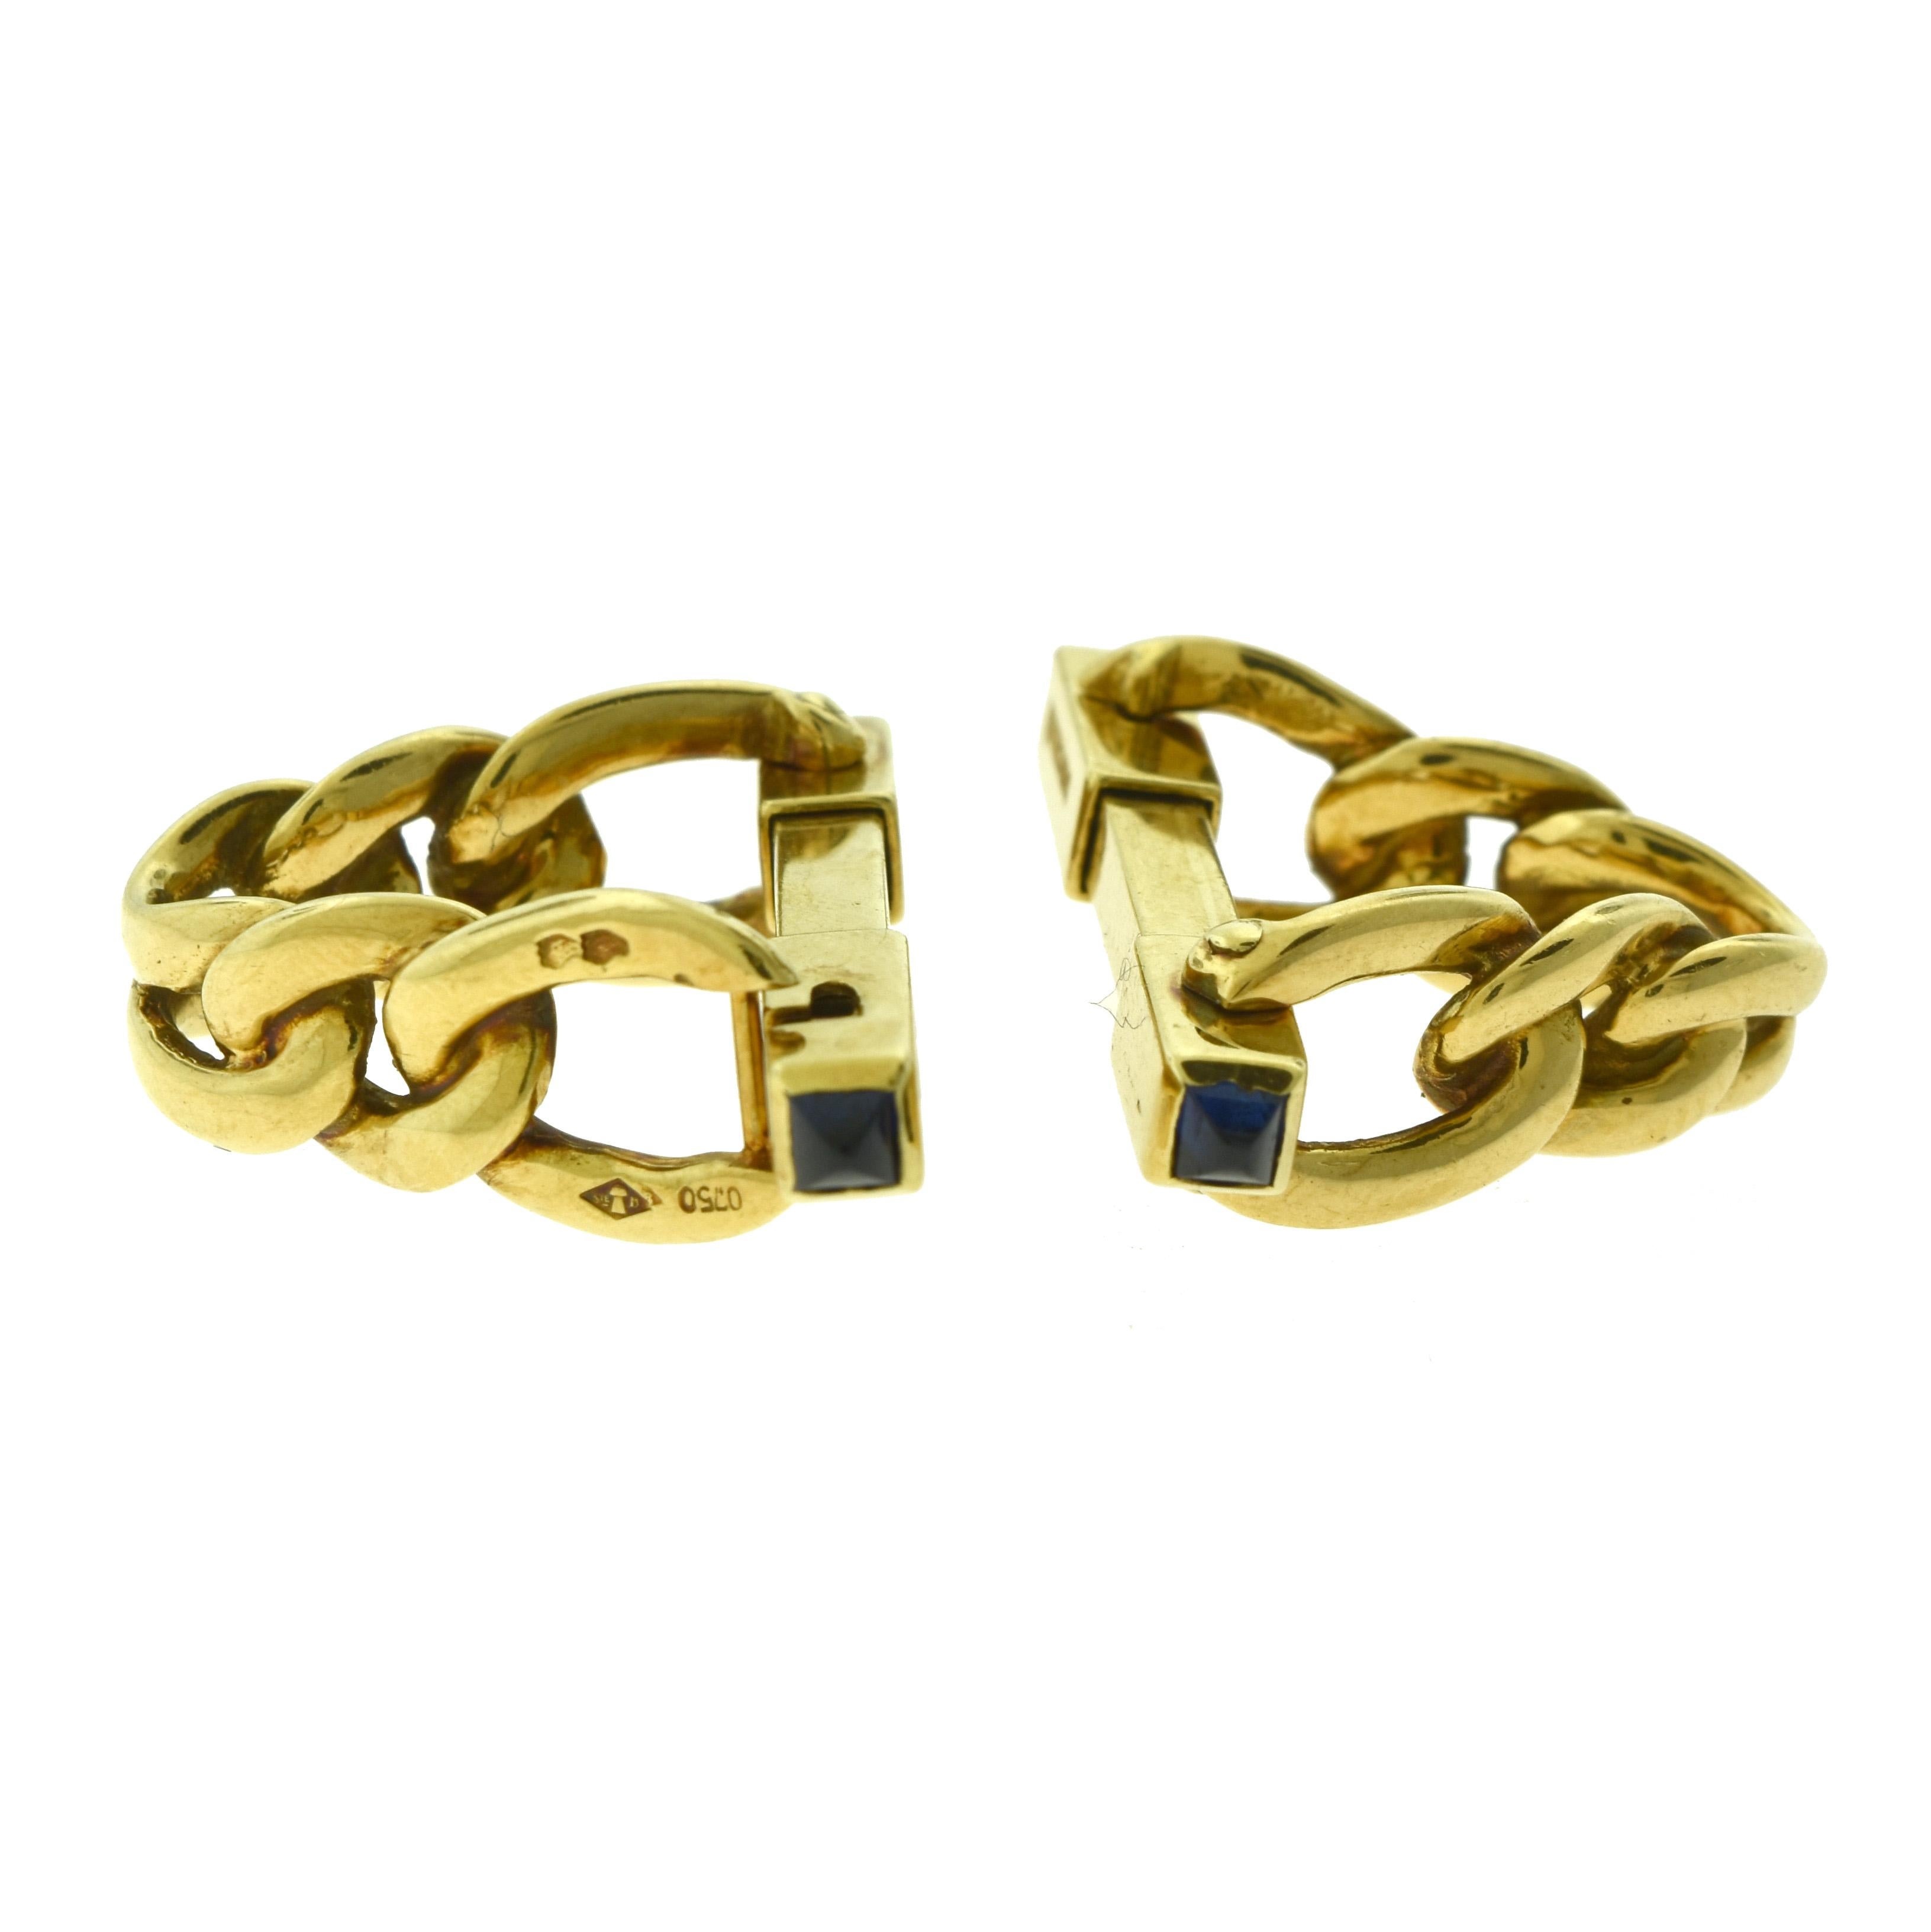 Art Deco Boucheron Heavy Stirrup Chain in 18 Karat Gold Cufflinks with Cabochon Sapphires